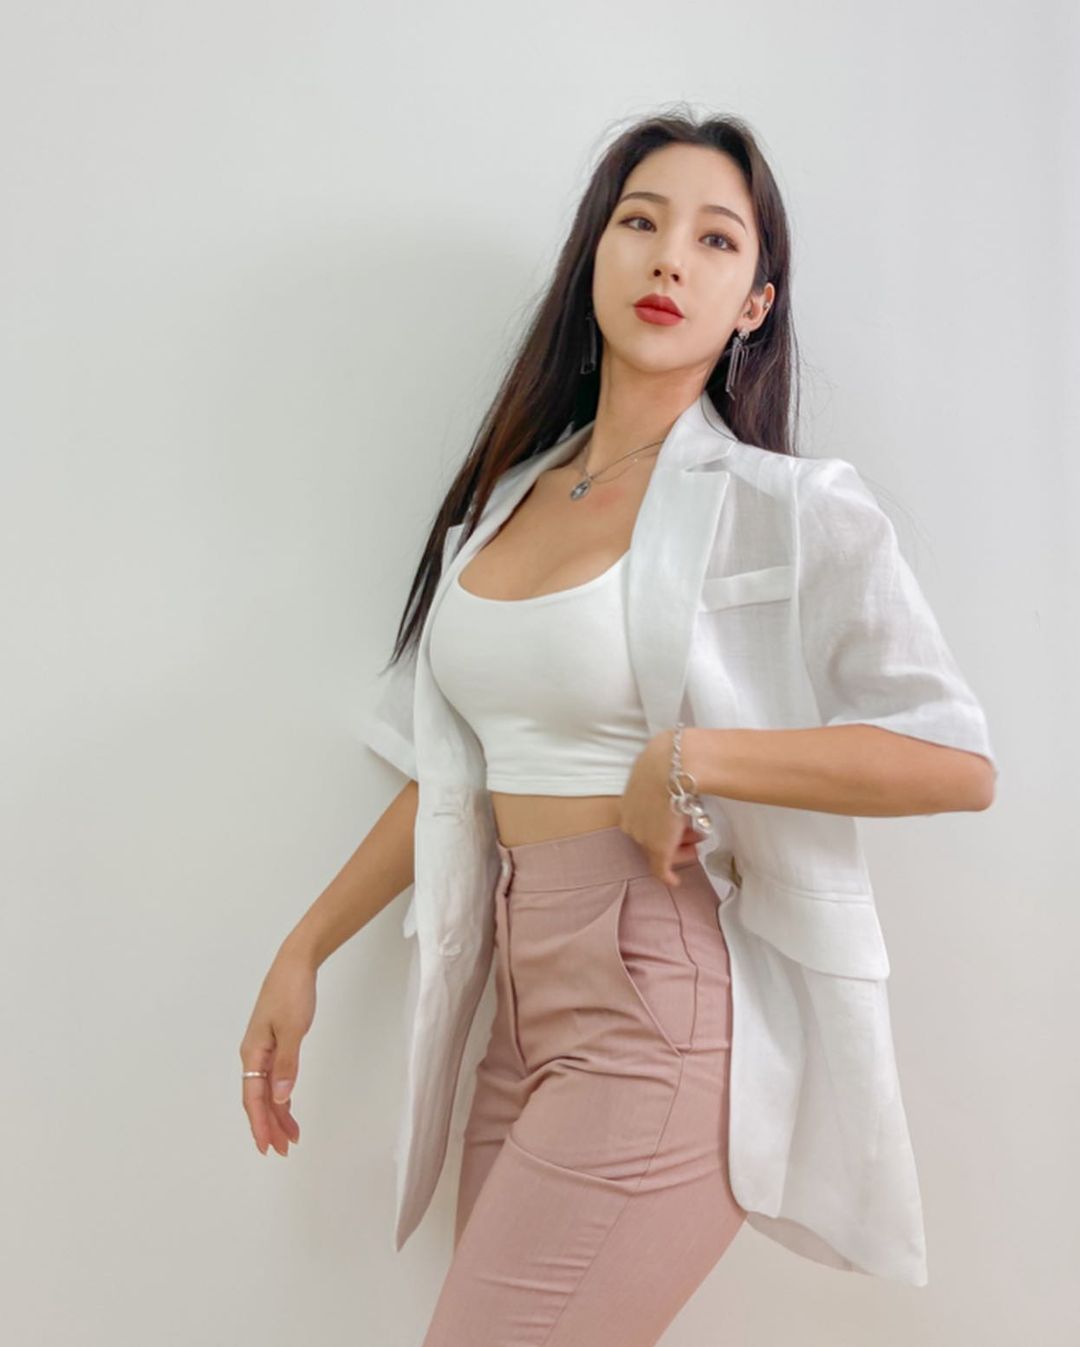 韓國美女攝影師「Ari」小麥肌膚色散發性感健康美　火辣「比基尼曲線」呈S型前凸後翹